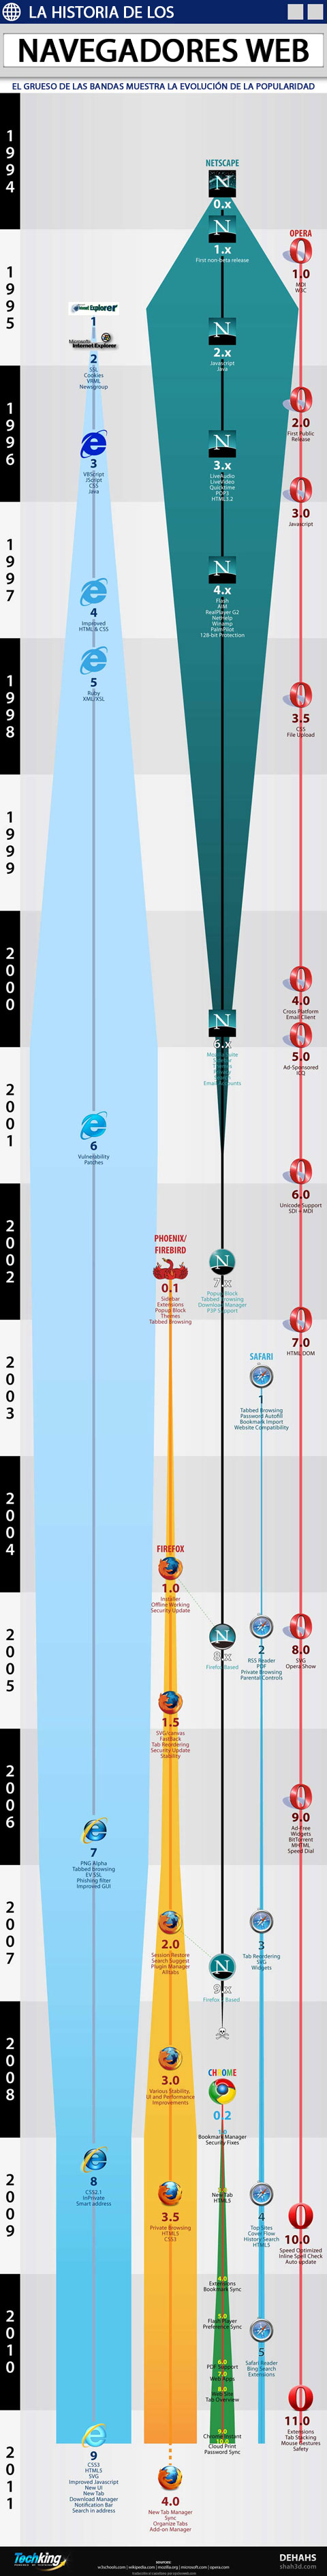 Internet Web Browser evolution 1994-2011 